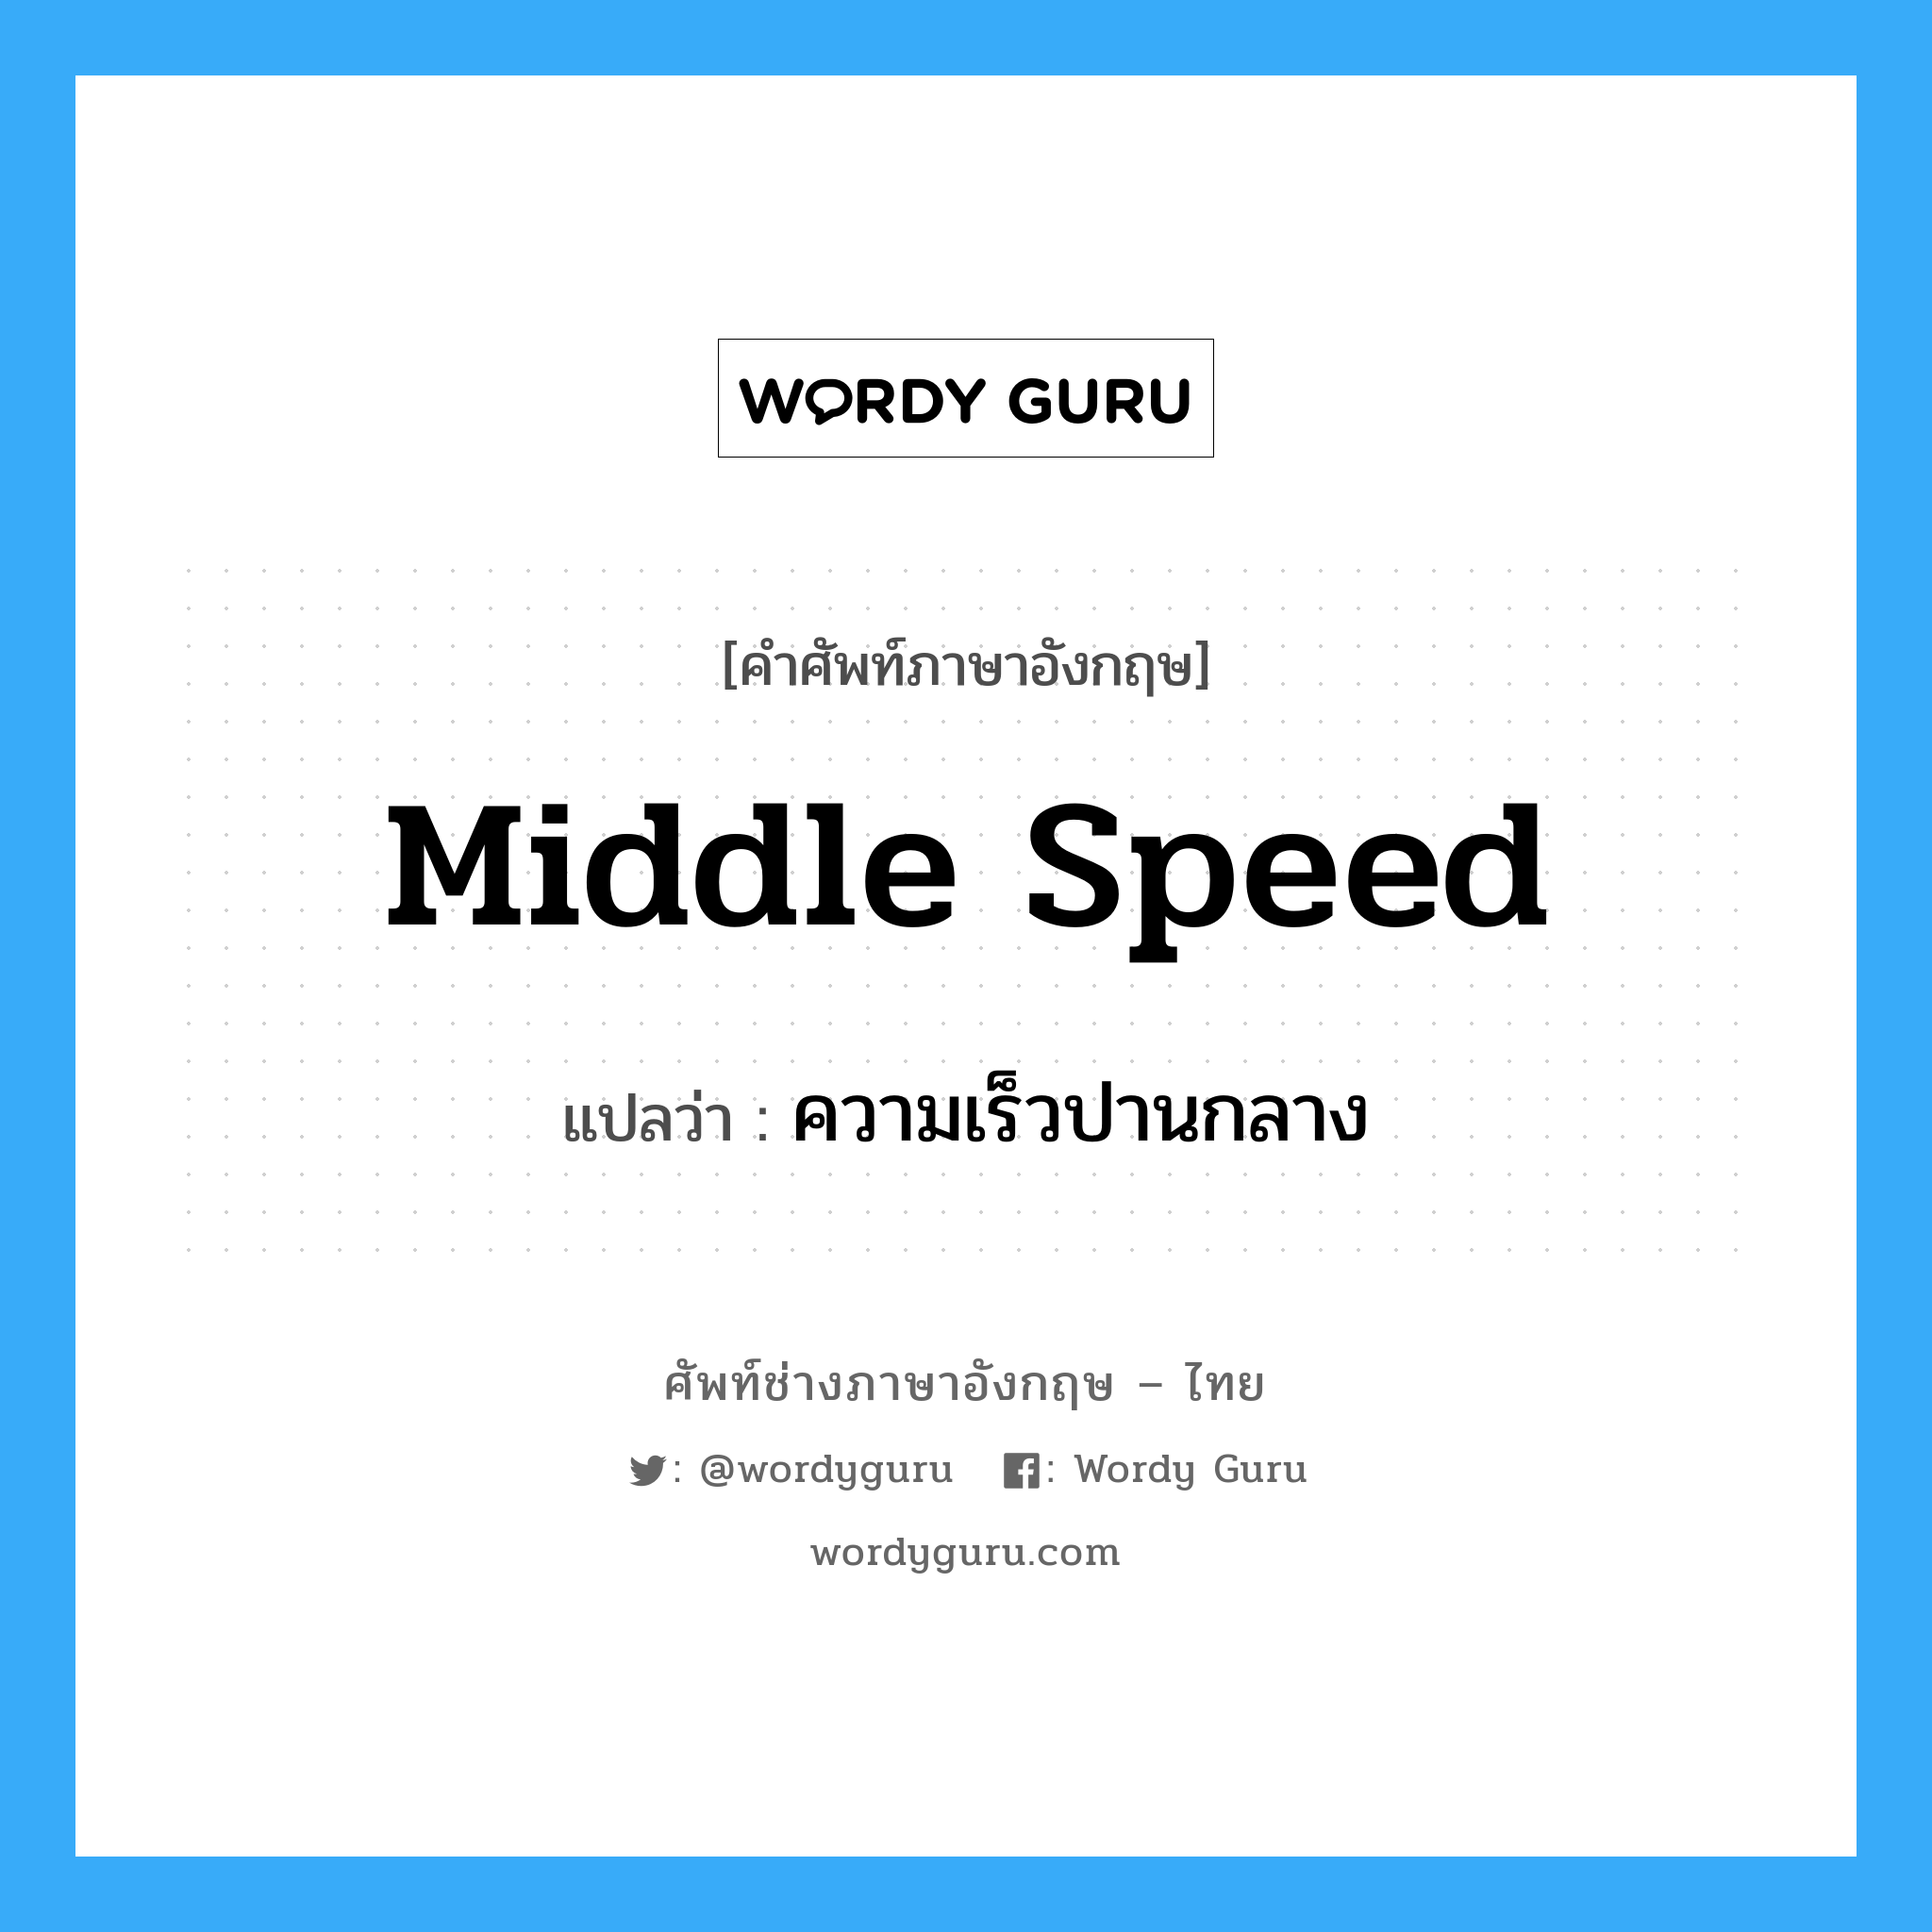 ความเร็วปานกลาง ภาษาอังกฤษ?, คำศัพท์ช่างภาษาอังกฤษ - ไทย ความเร็วปานกลาง คำศัพท์ภาษาอังกฤษ ความเร็วปานกลาง แปลว่า middle speed